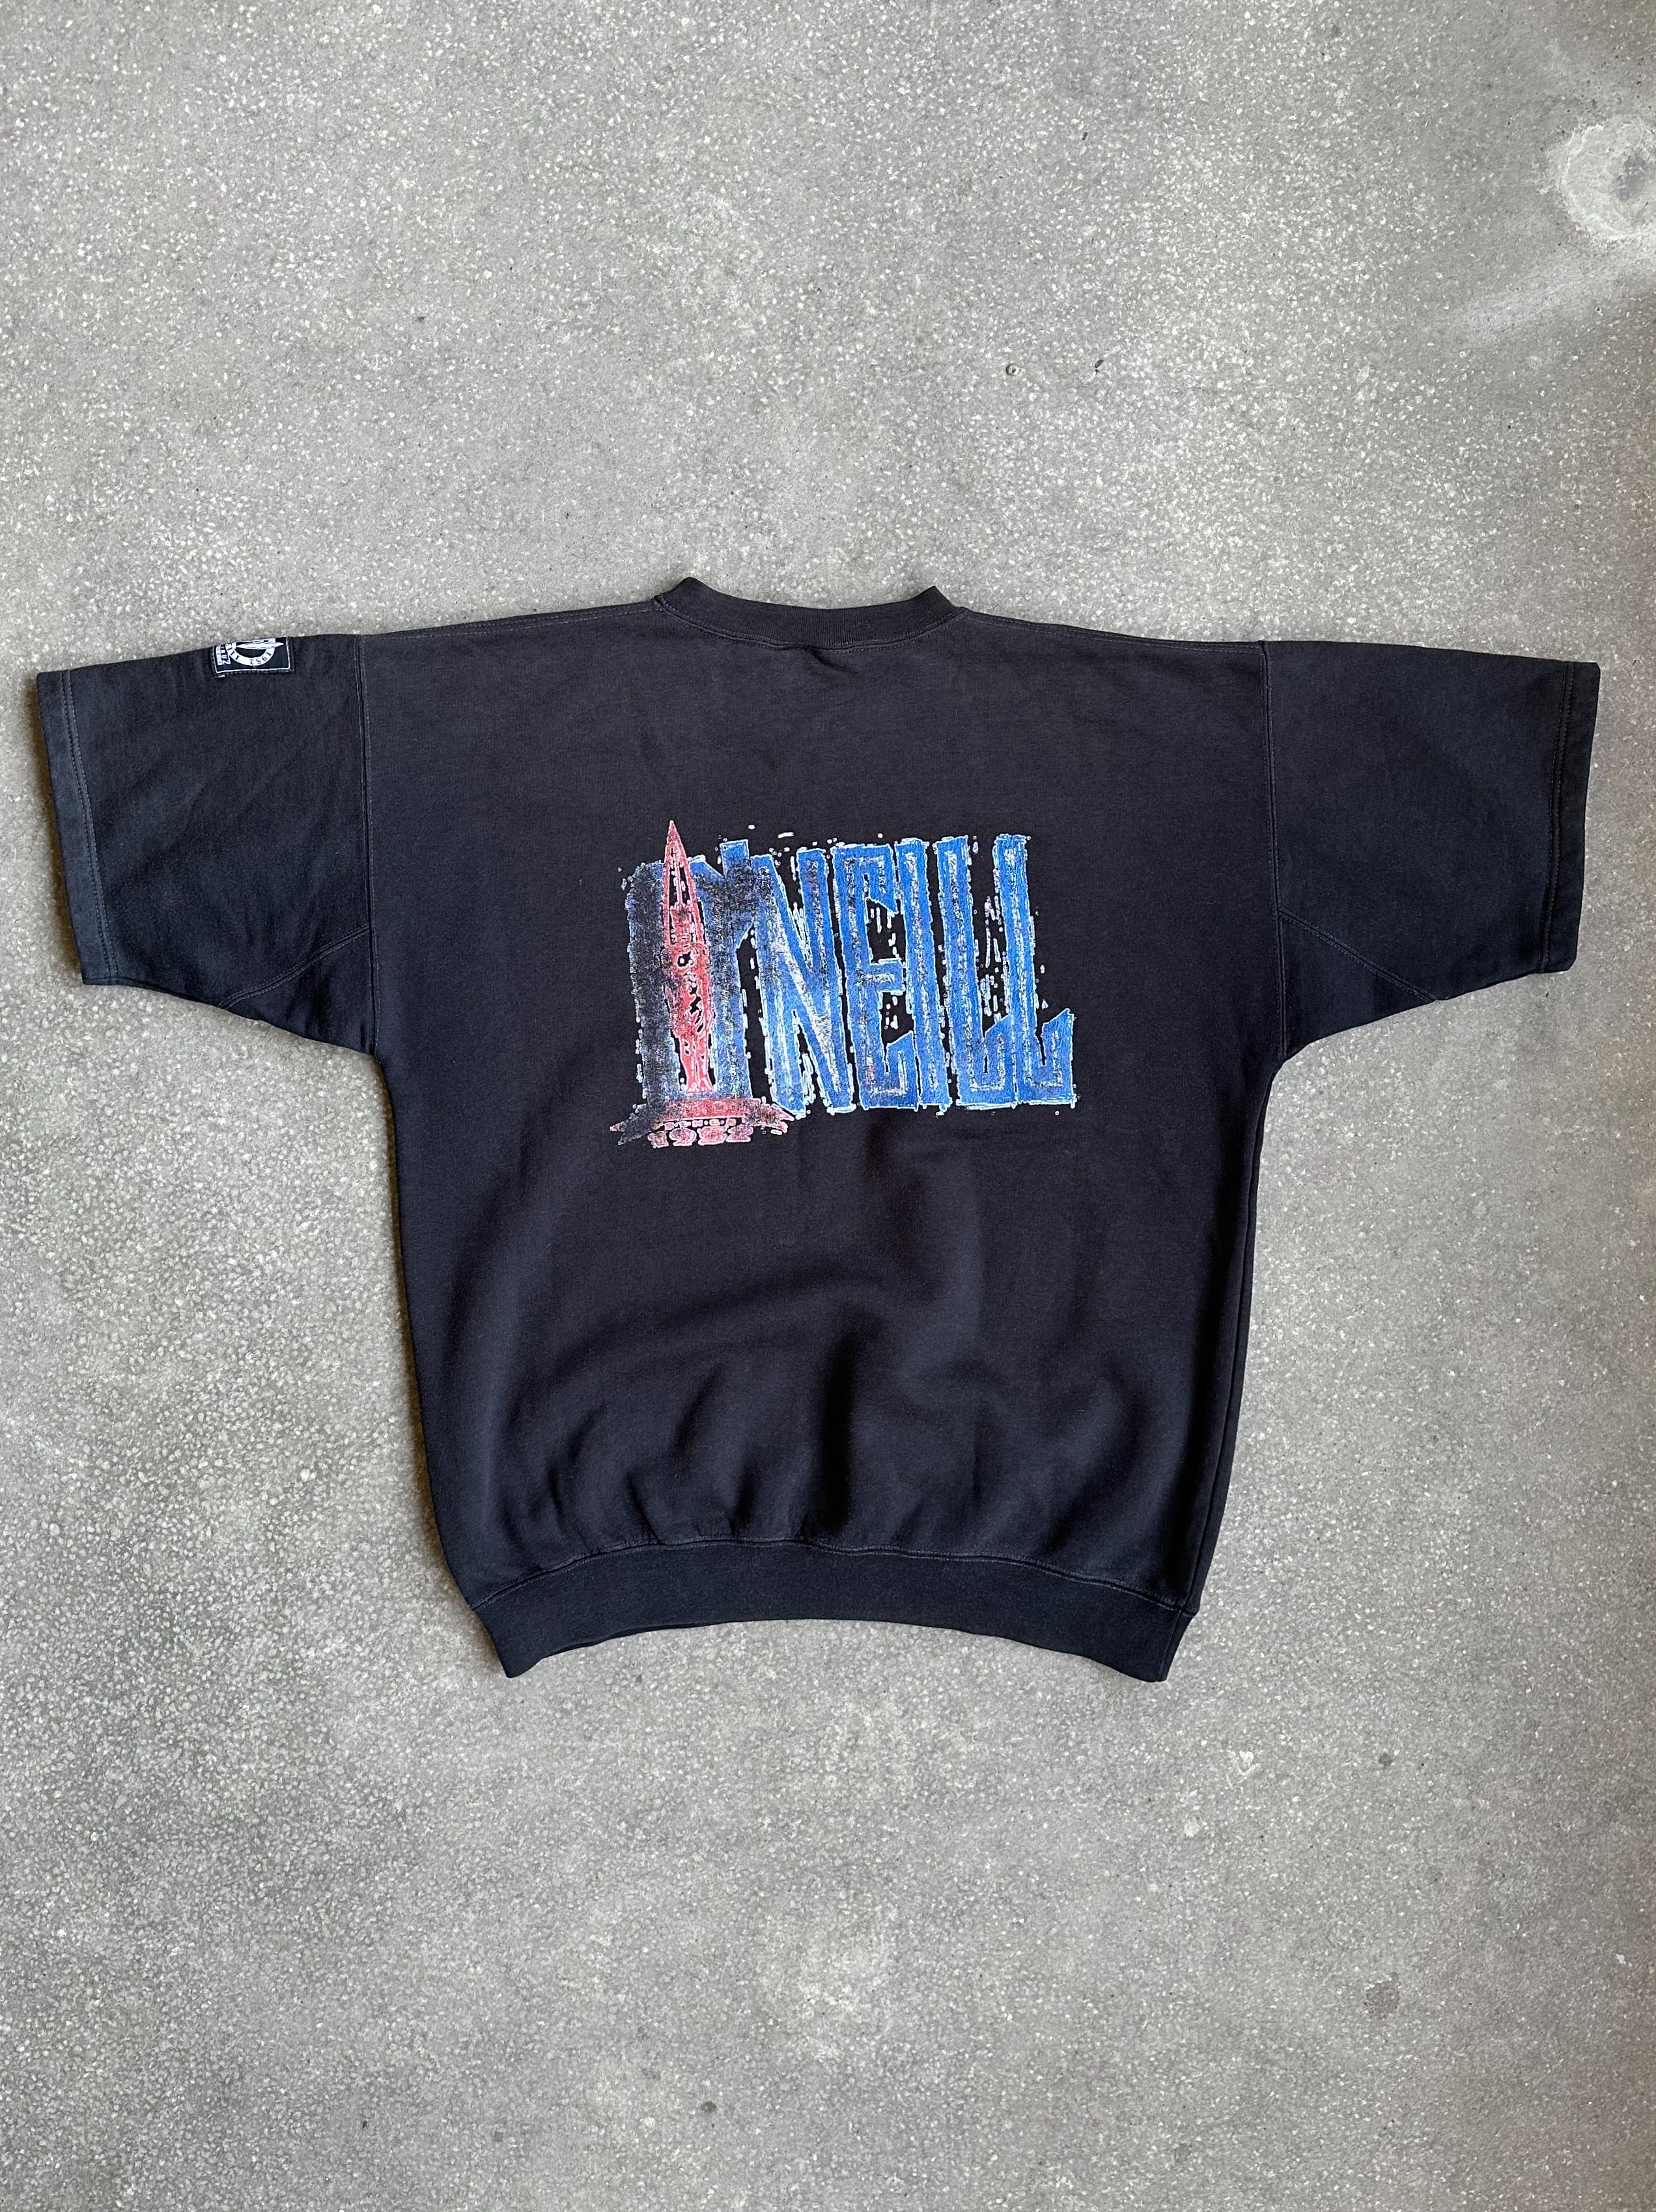 Vintage O'Neill Short-Sleeved Sweater - Medium